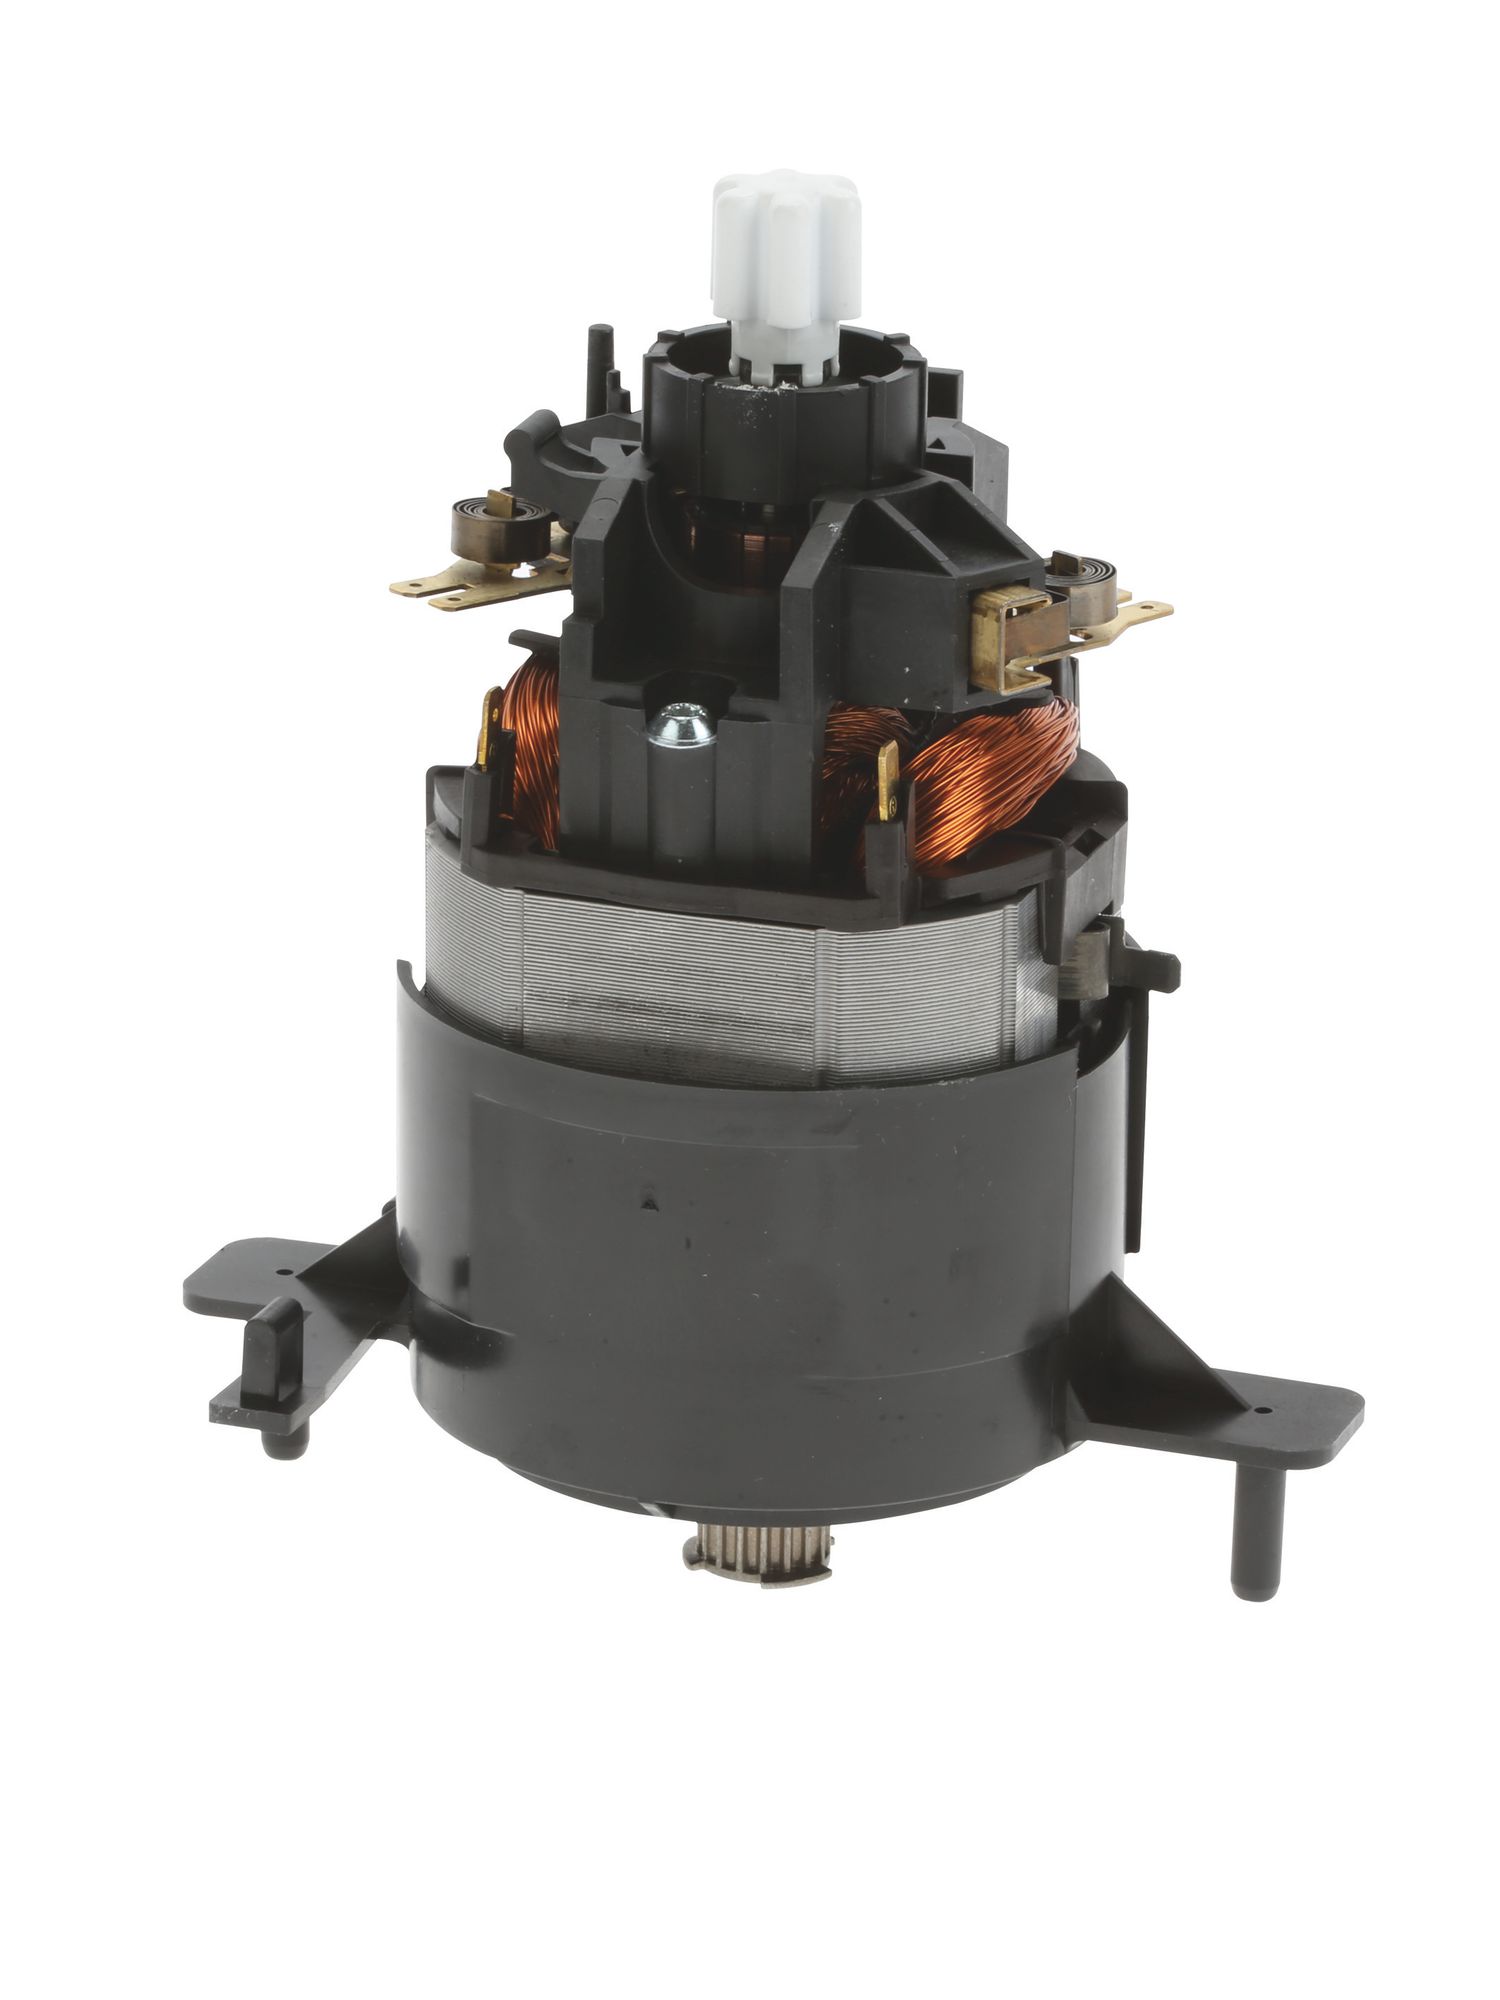 Motor MK5 AC44 800W mit EMC Filter (KD-00654985) von BSH